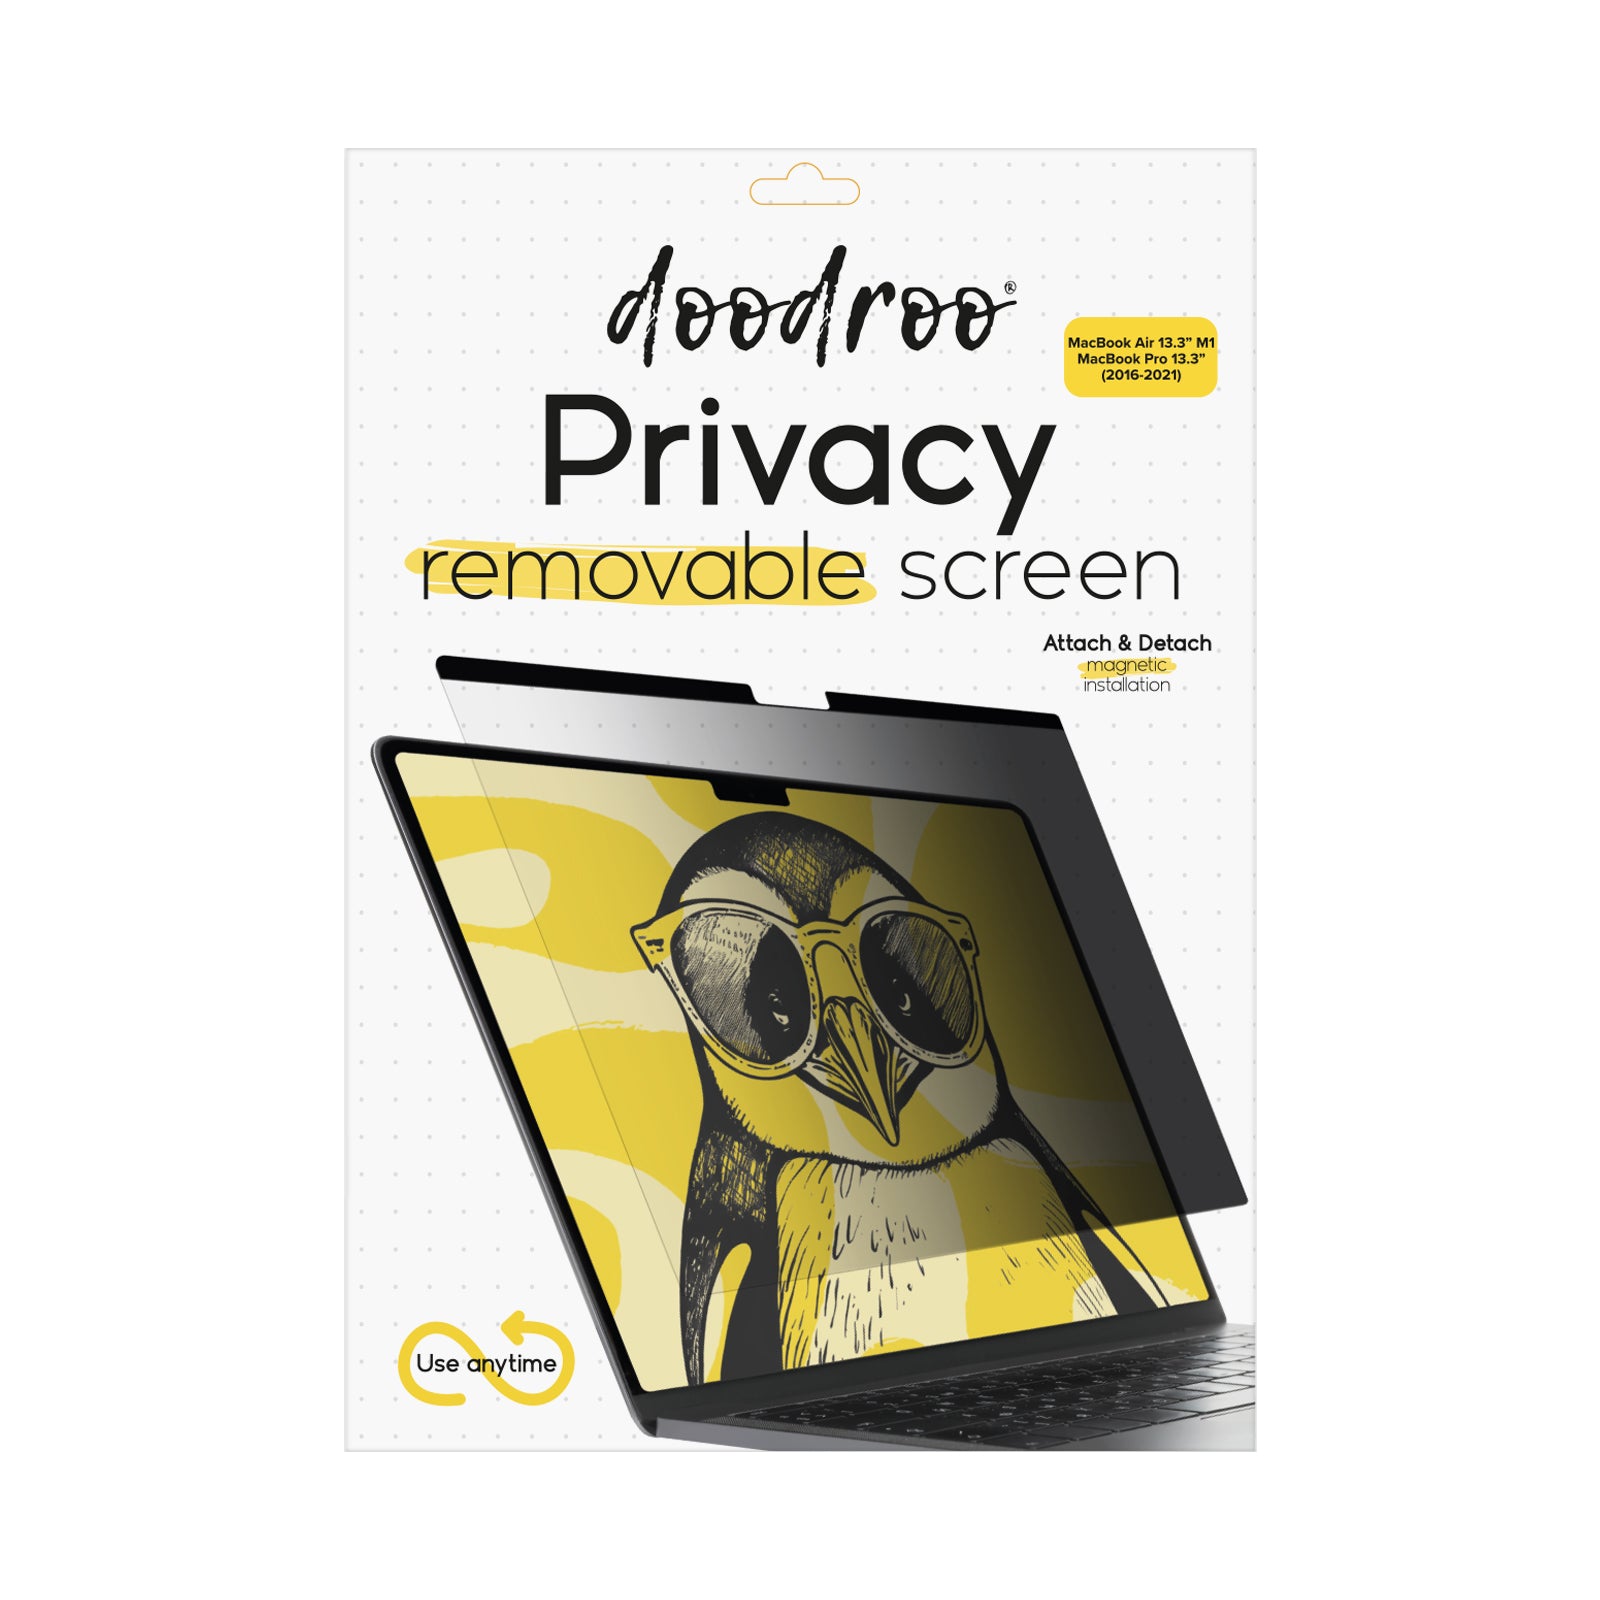 Filtre protecteur de confidentialité, amovible, pour MacBook Air 13.3" M1/MacBook Pro 13.3" (2016-2021)